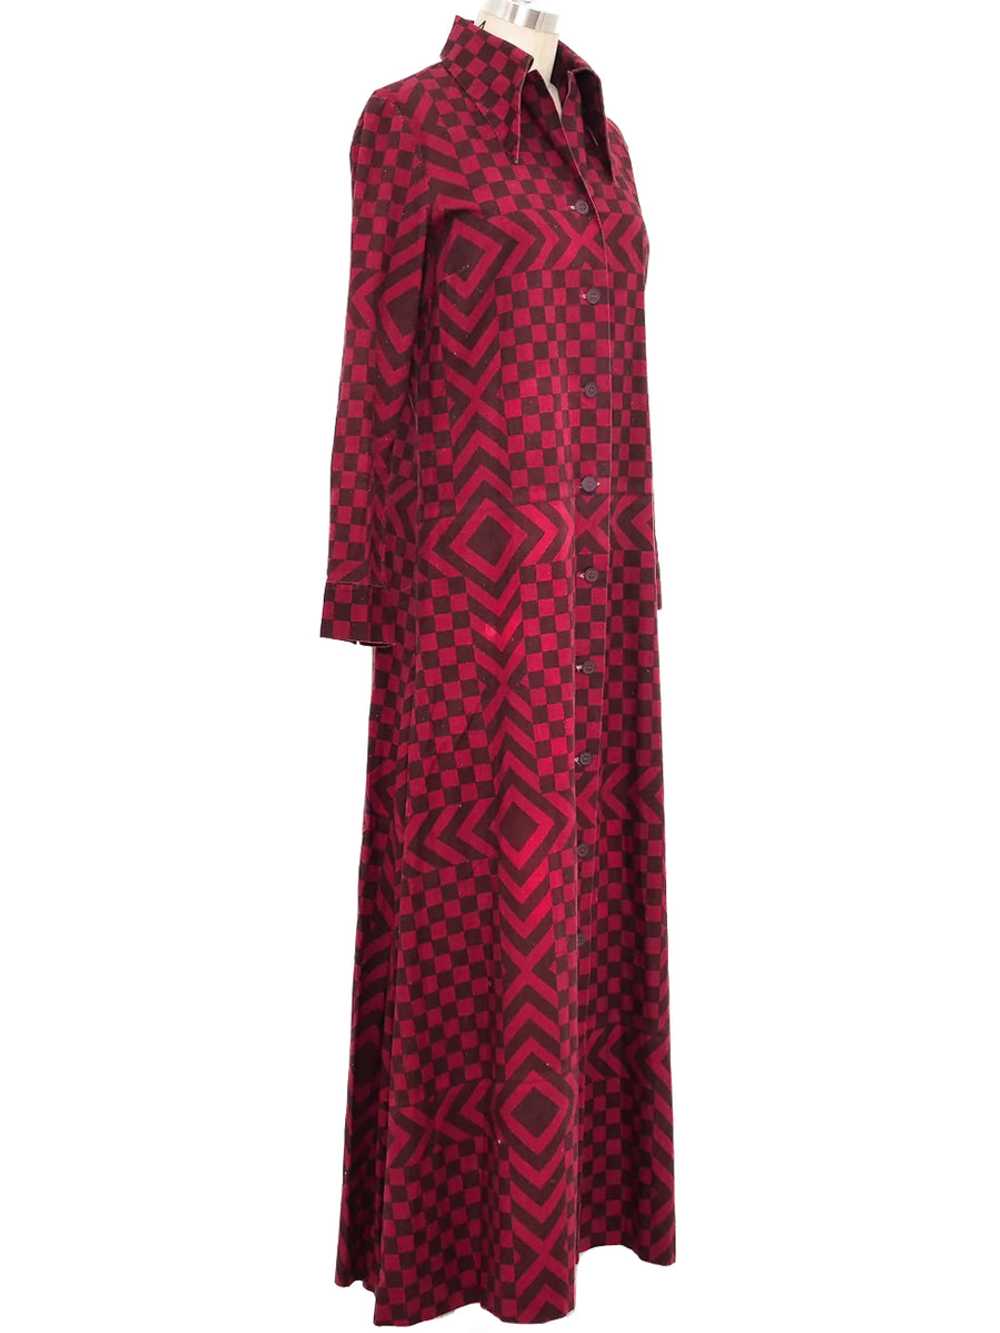 1974 Marimekko Printed Maxi Dress - image 2